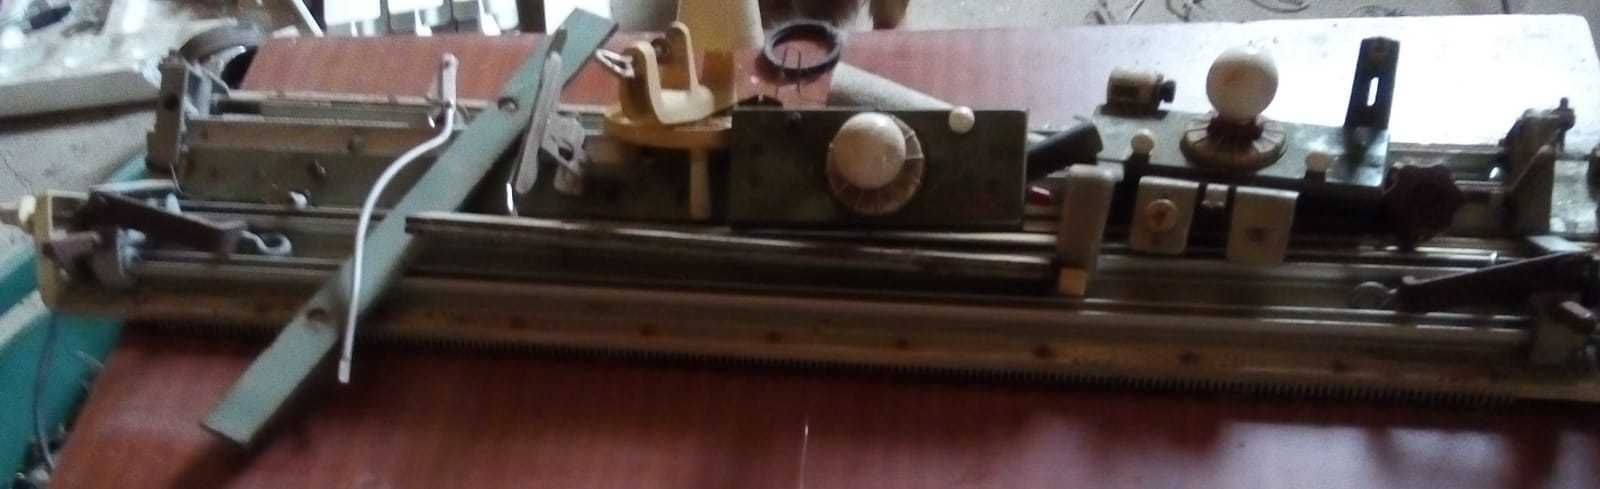 Maquina antiga de fazer tecidos